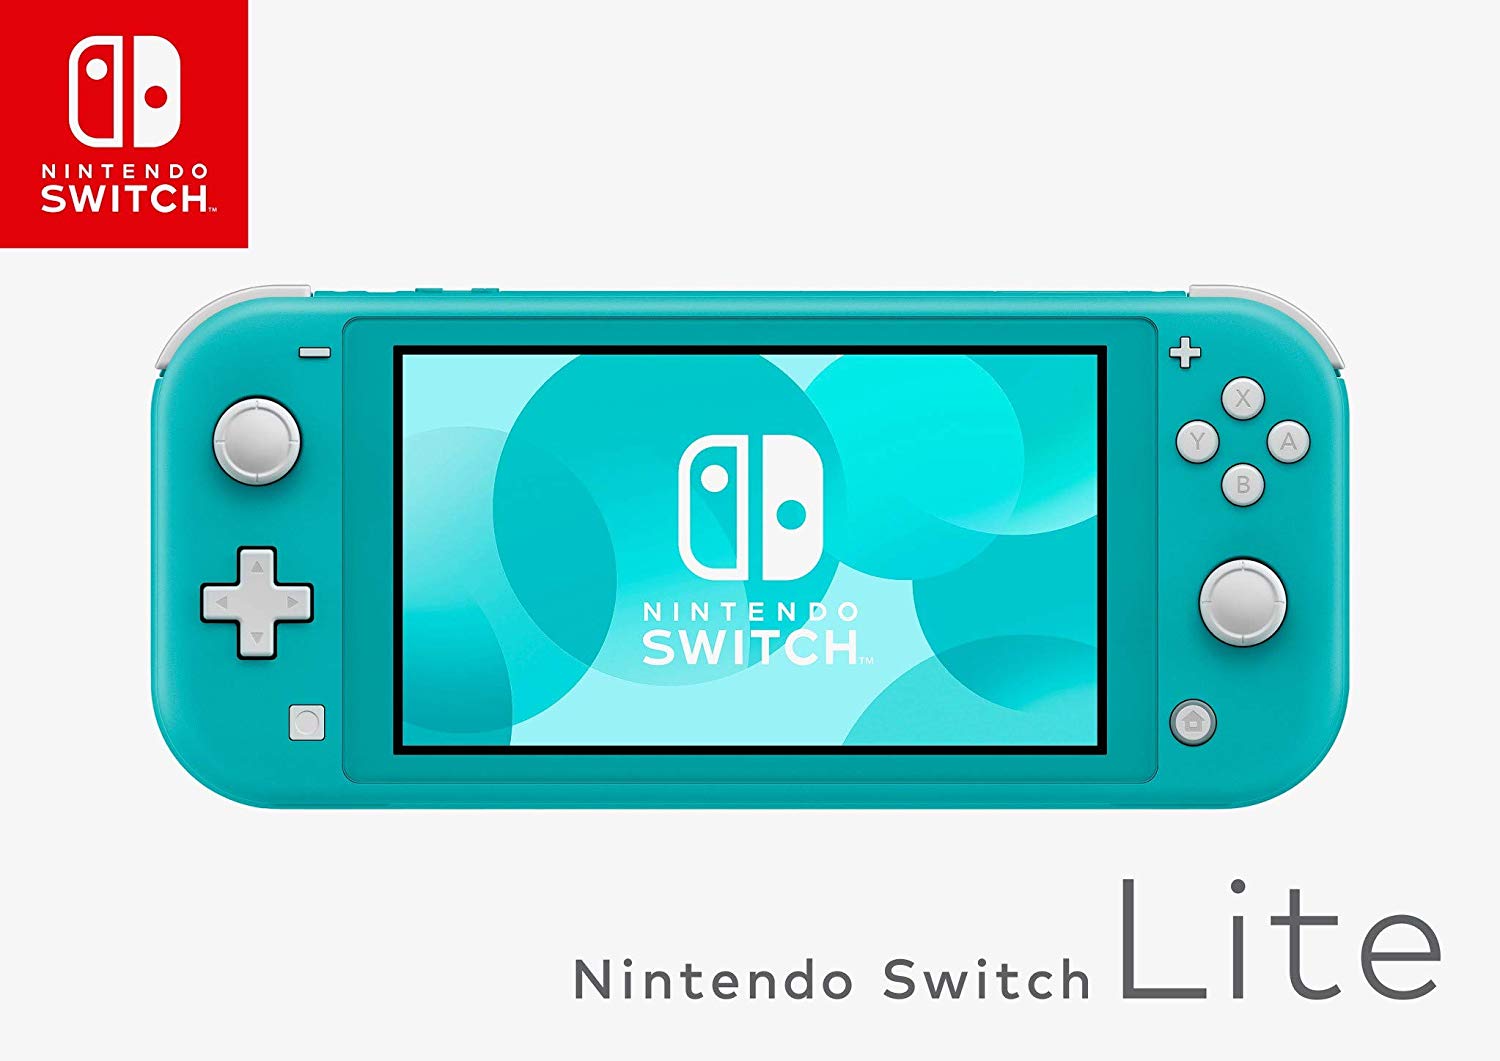 Switch - console de jeux portables 15,8 cm (6.2') 32 Go Écran tactile Wifi  Bleu, Rouge